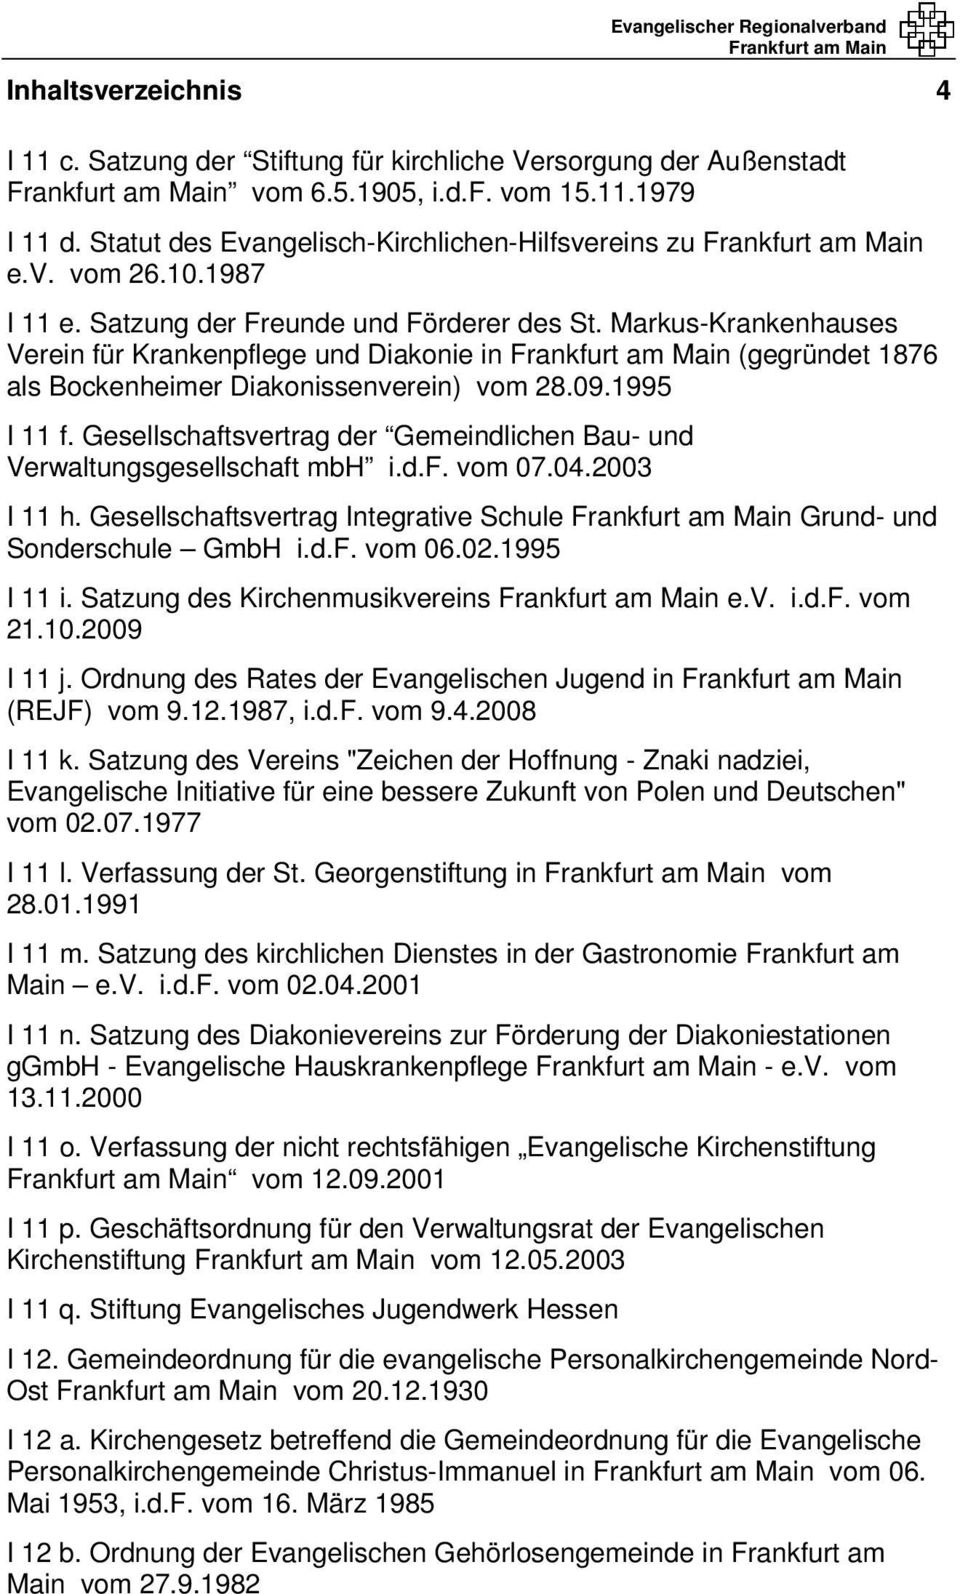 Gesellschaftsvertrag der Gemeindlichen Bau- und Verwaltungsgesellschaft mbh i.d.f. vom 07.04.2003 I 11 h. Gesellschaftsvertrag Integrative Schule Grund- und Sonderschule GmbH i.d.f. vom 06.02.